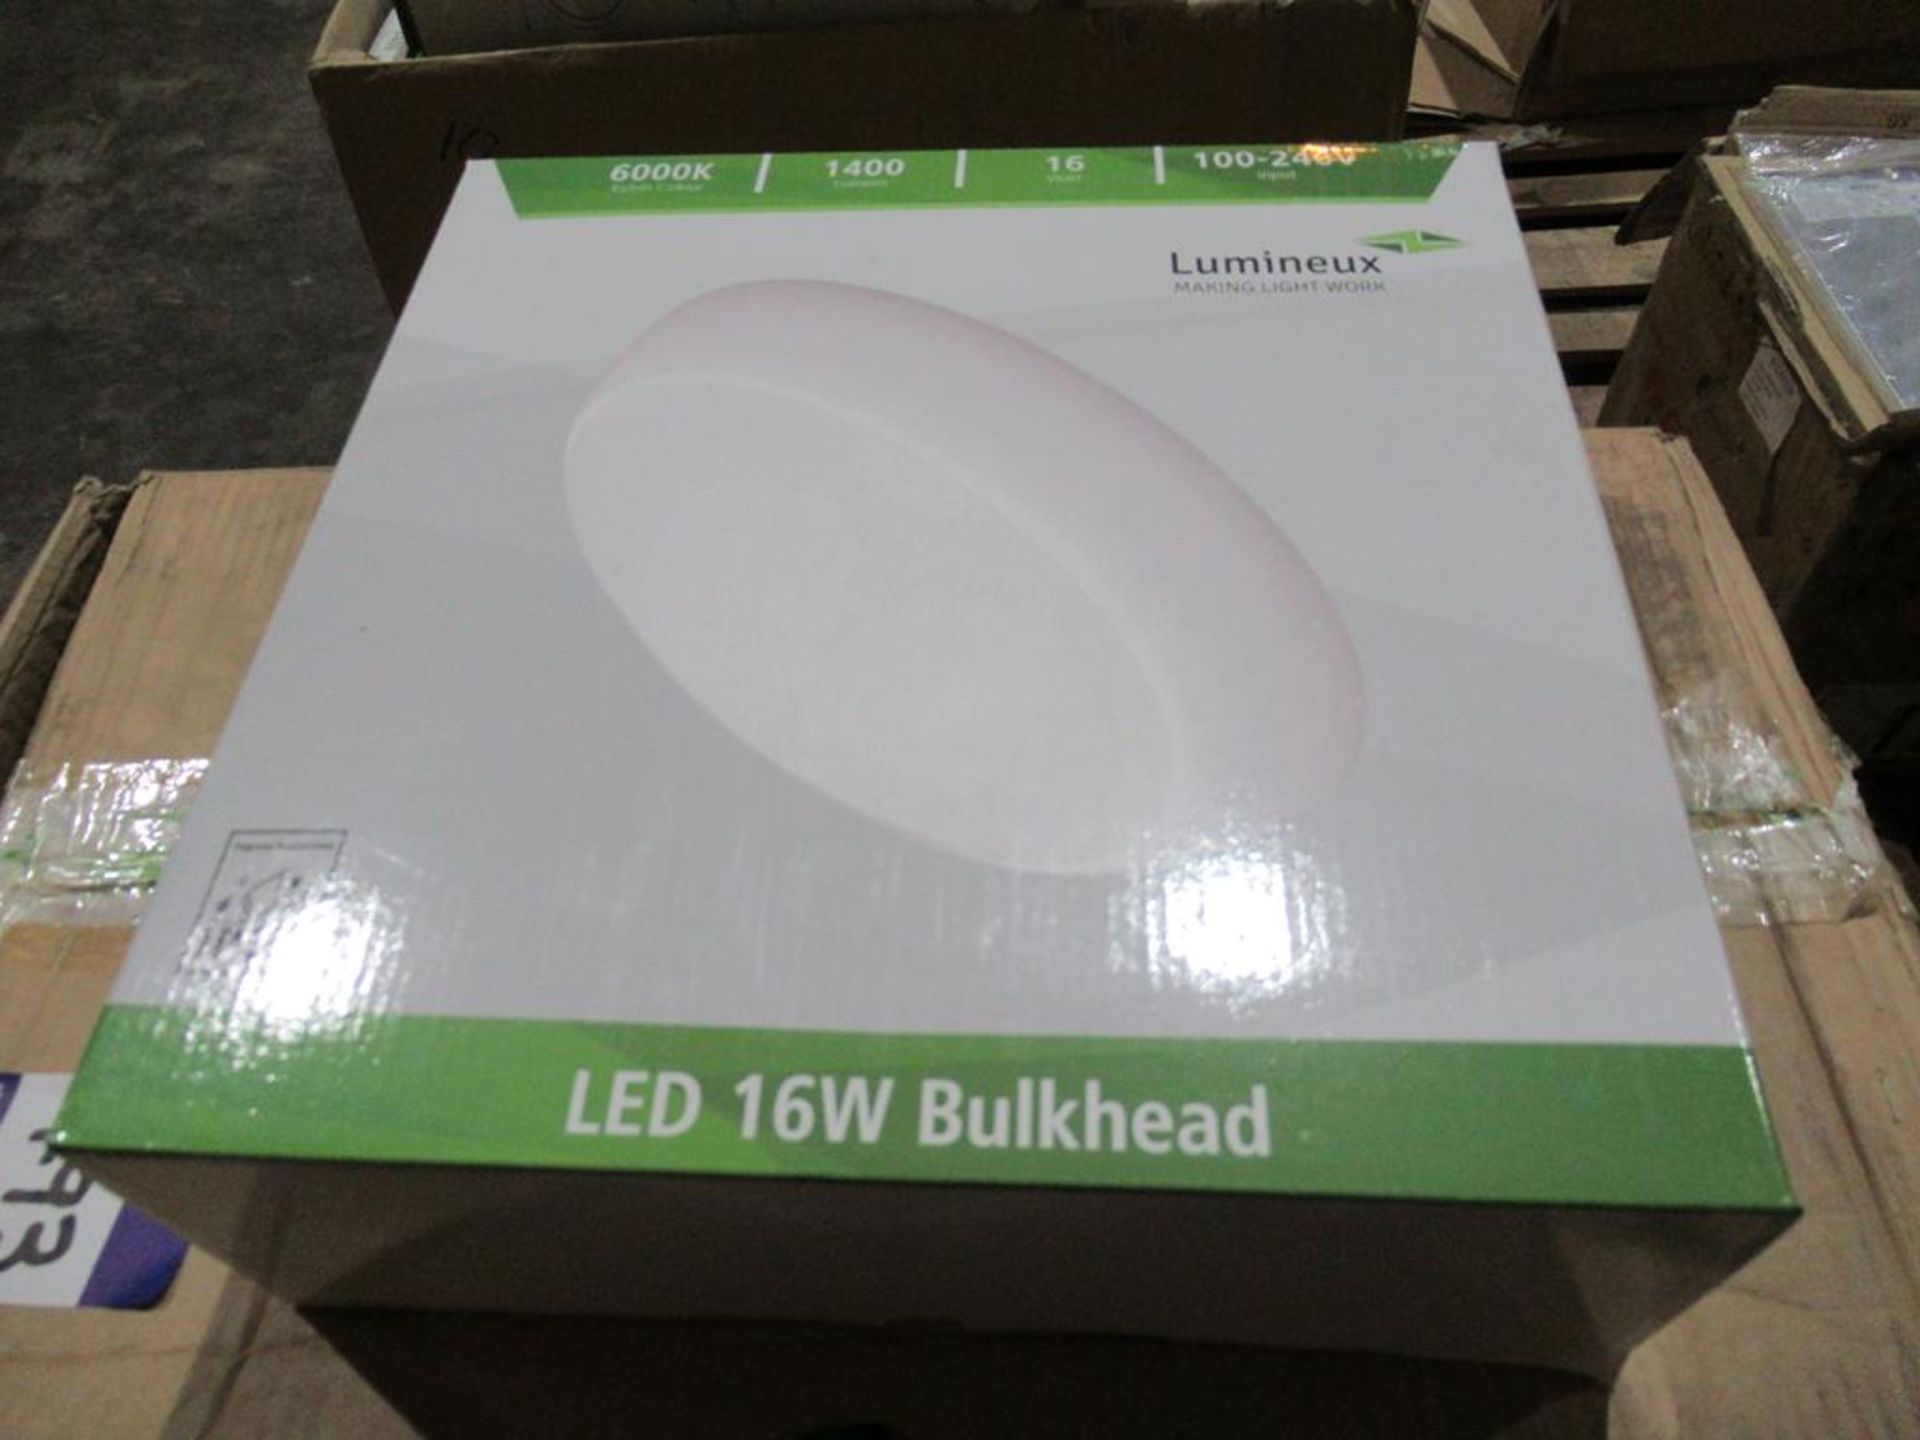 10 x Lumineux LED 16W Bulkhead 6000K 1400lm 100-240V - Image 2 of 3